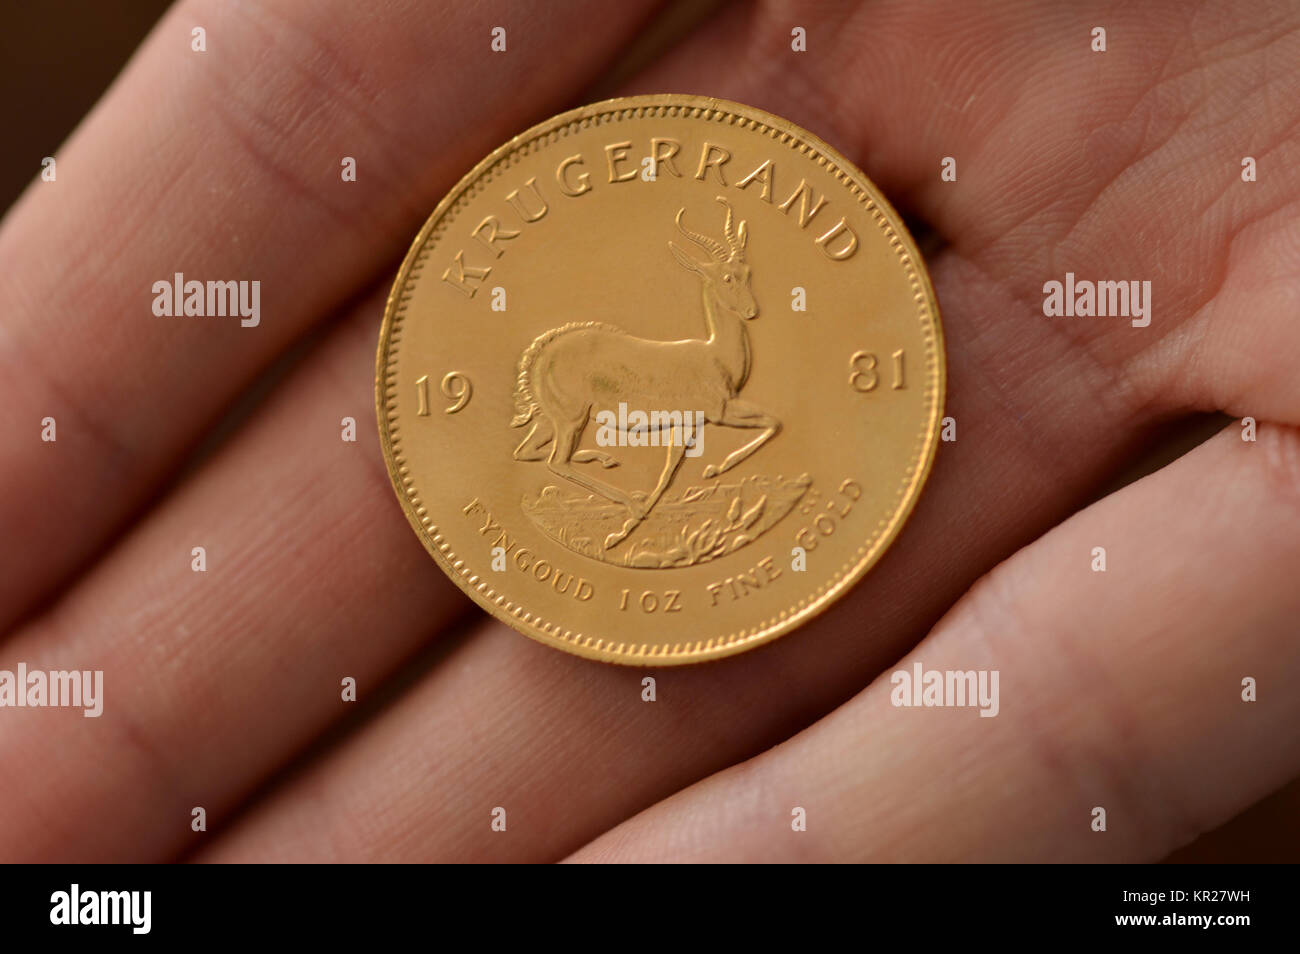 1 ounce Krugerrand golden coin, 1 Unze Krugerrand Goldmuenze Stock Photo -  Alamy